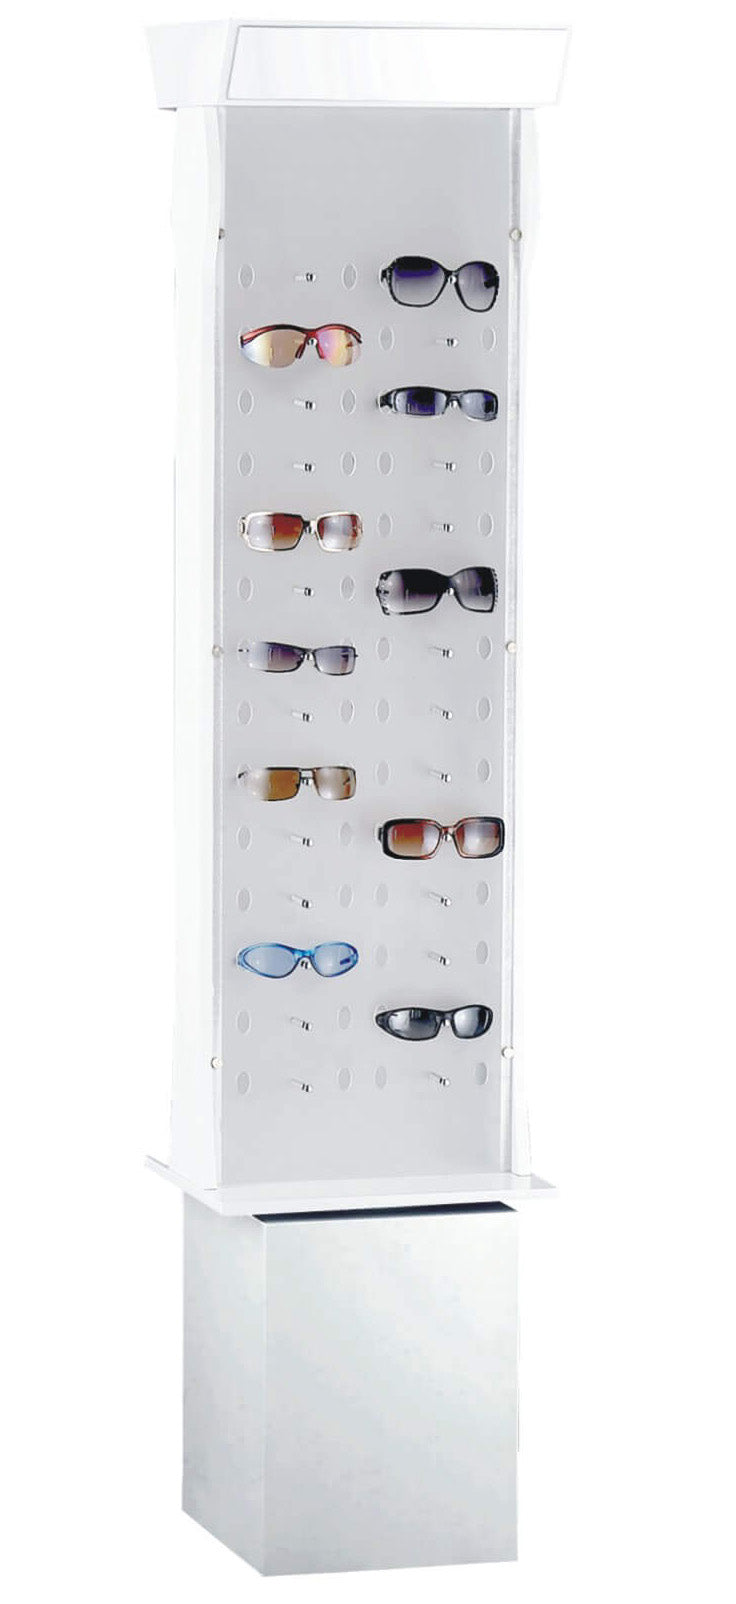 Eyeglass Display Stand D8513 - D8542